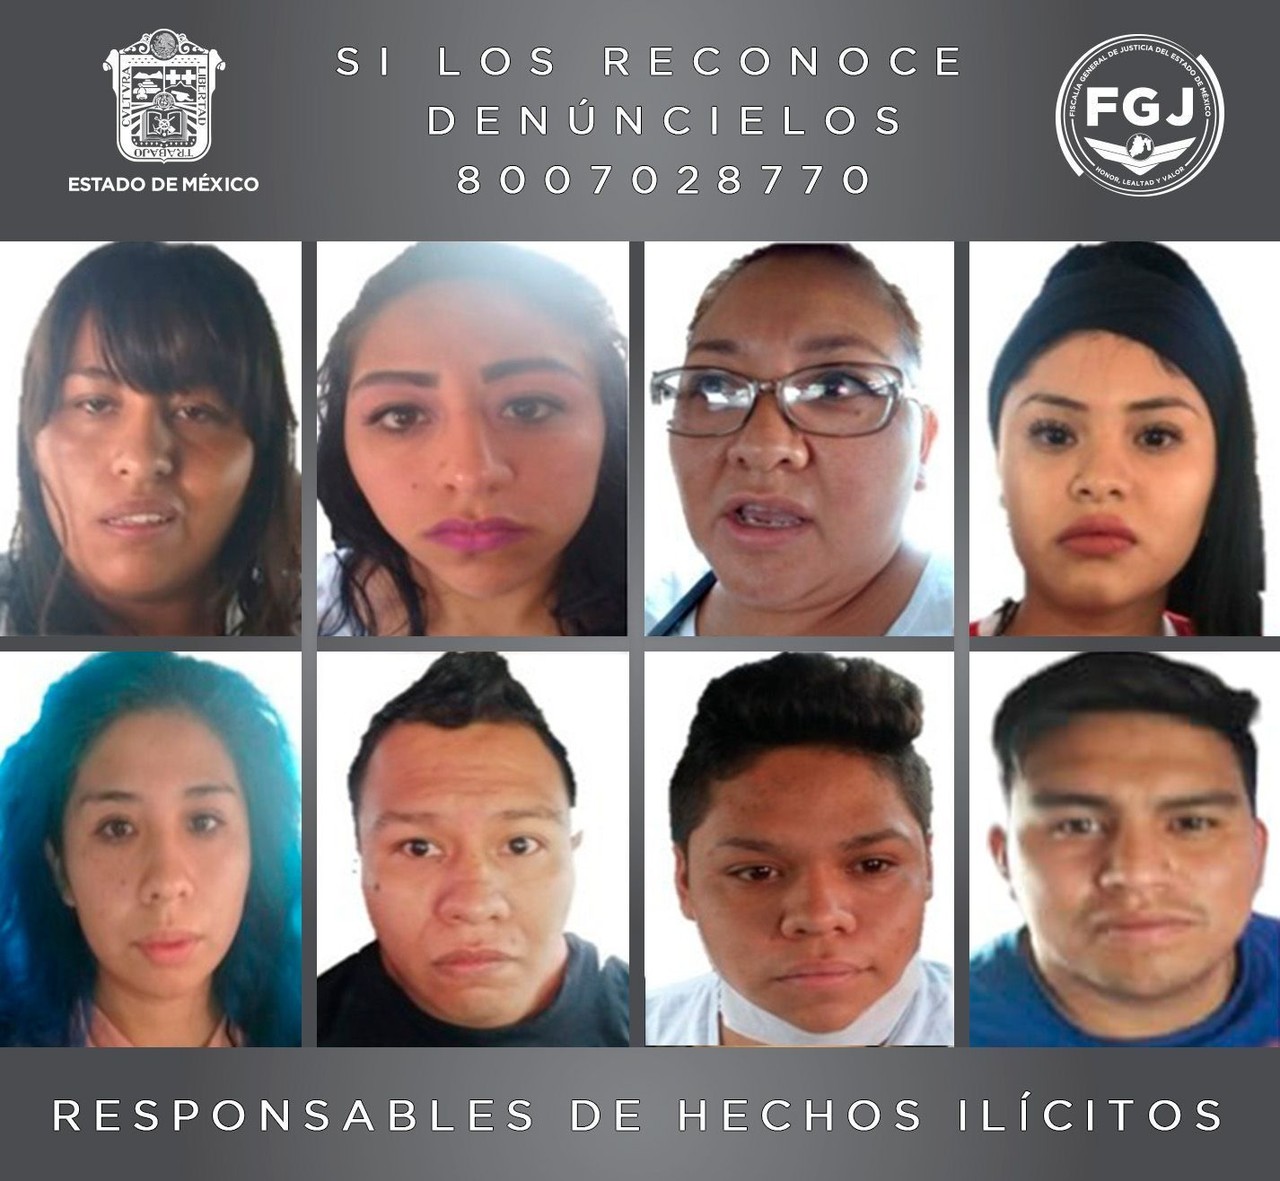 Estas ocho personas de distintas formas participaron en la planeación y ejecución del secuestro de la víctima. Imagen: FGJEM